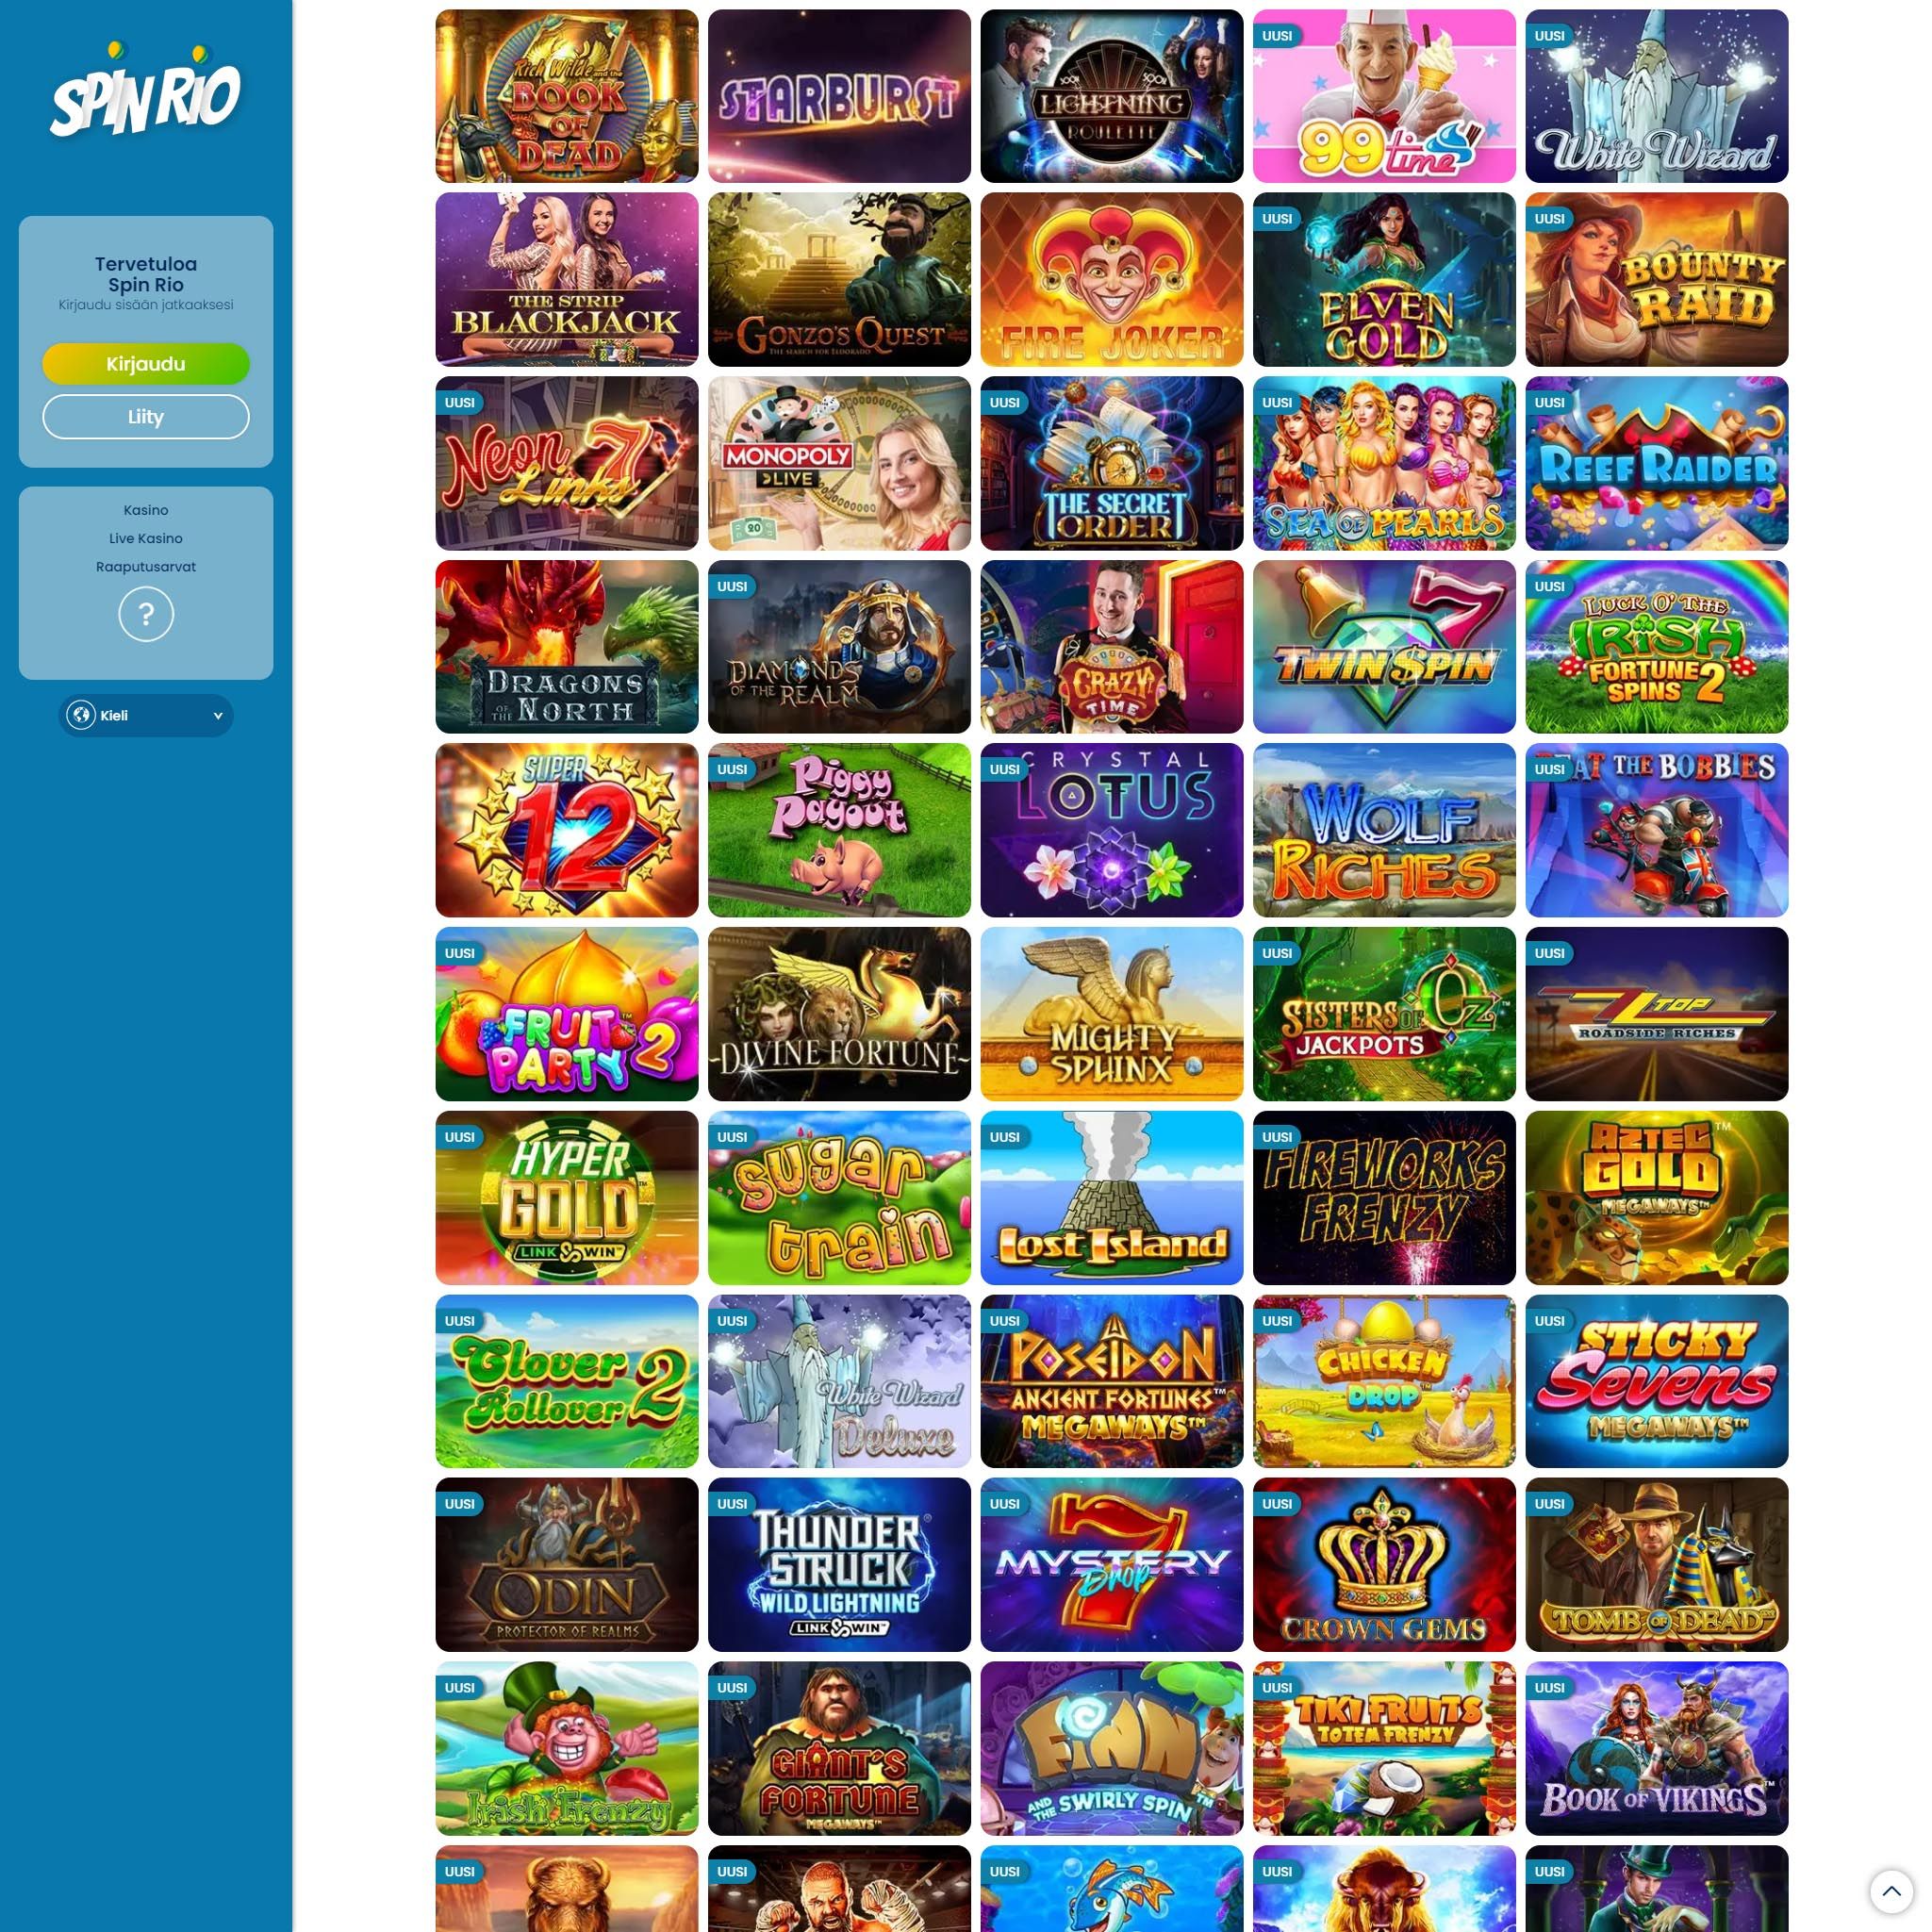 Spin Rio Casino game catalogue